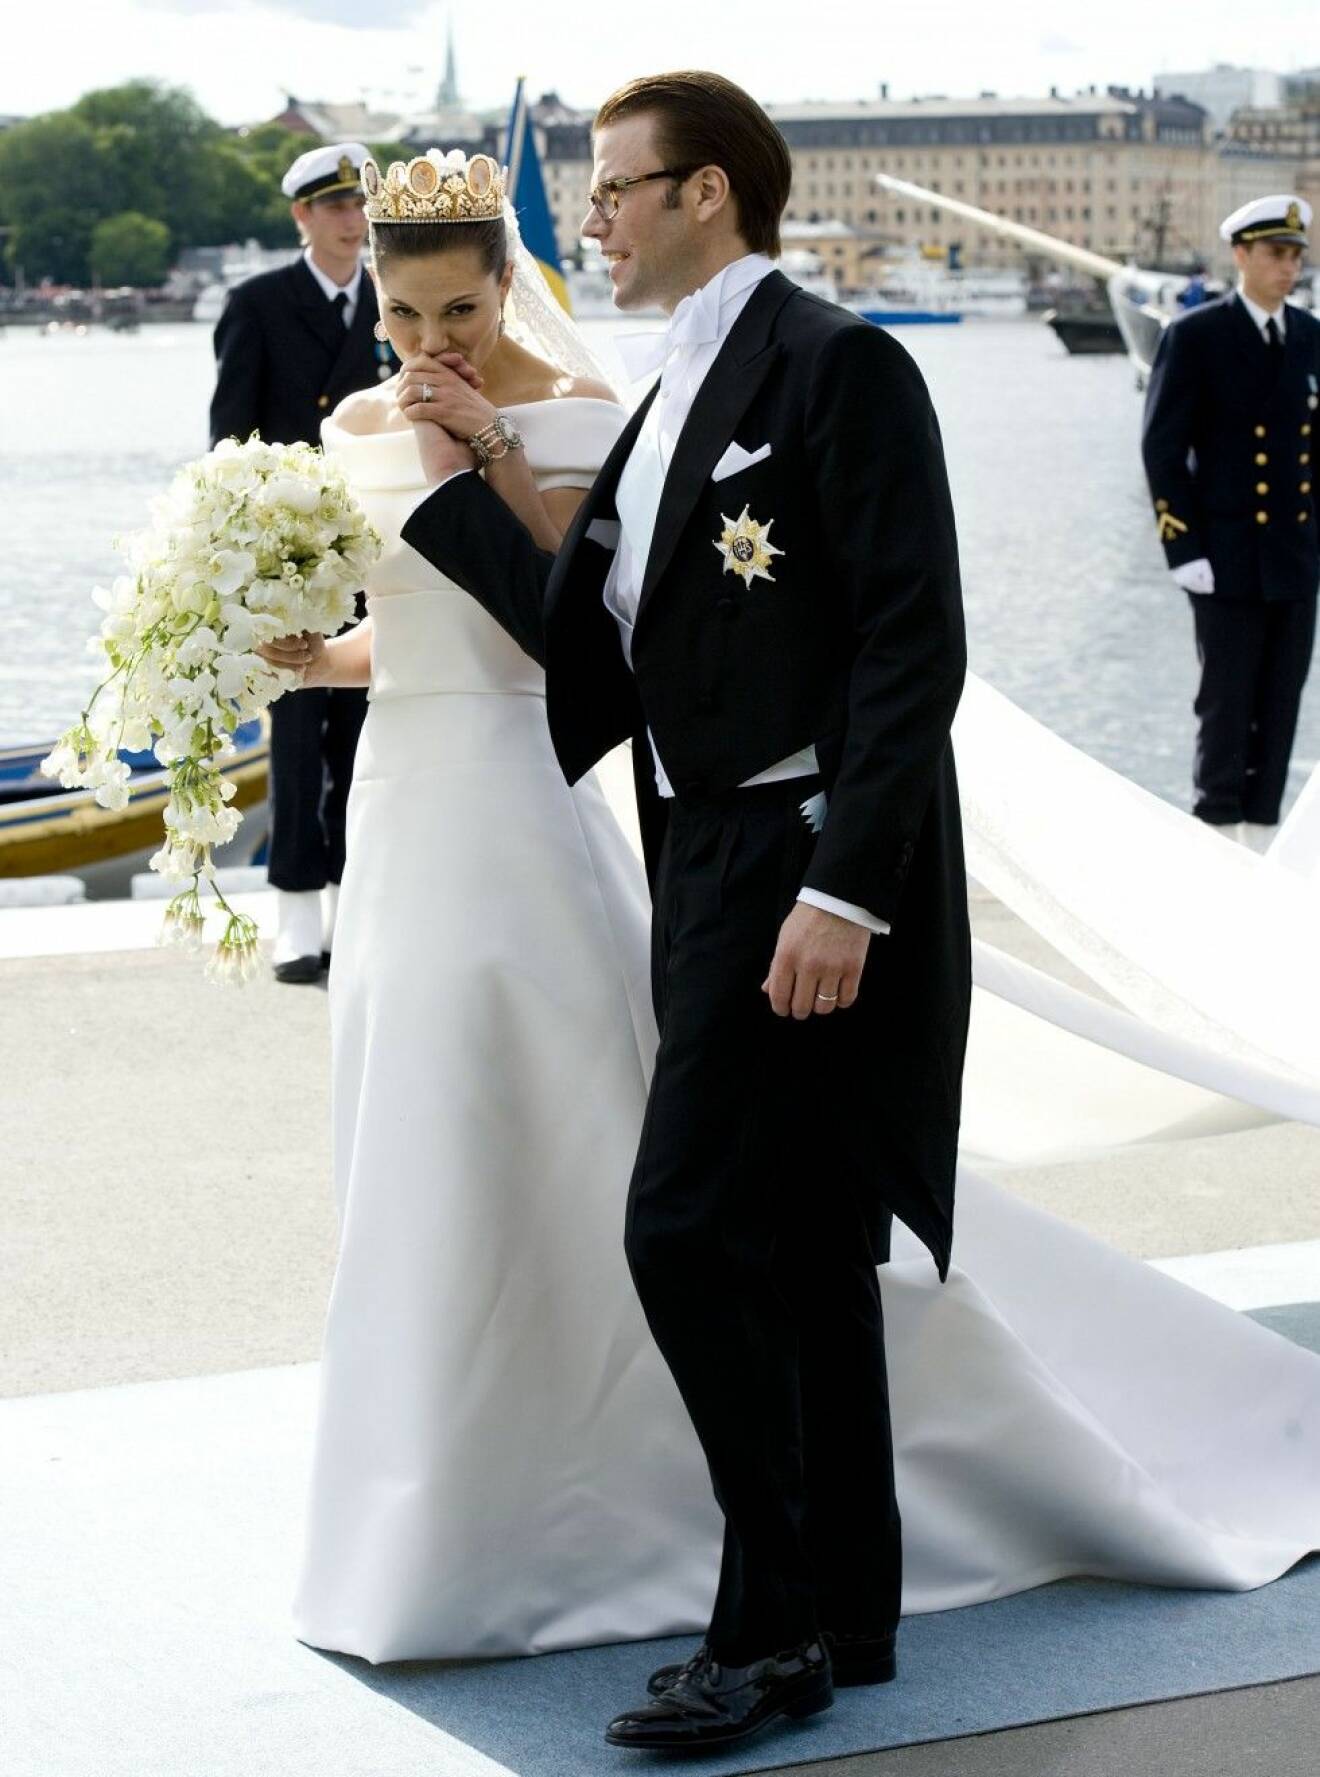 Kongeligt bryllup i Sverige